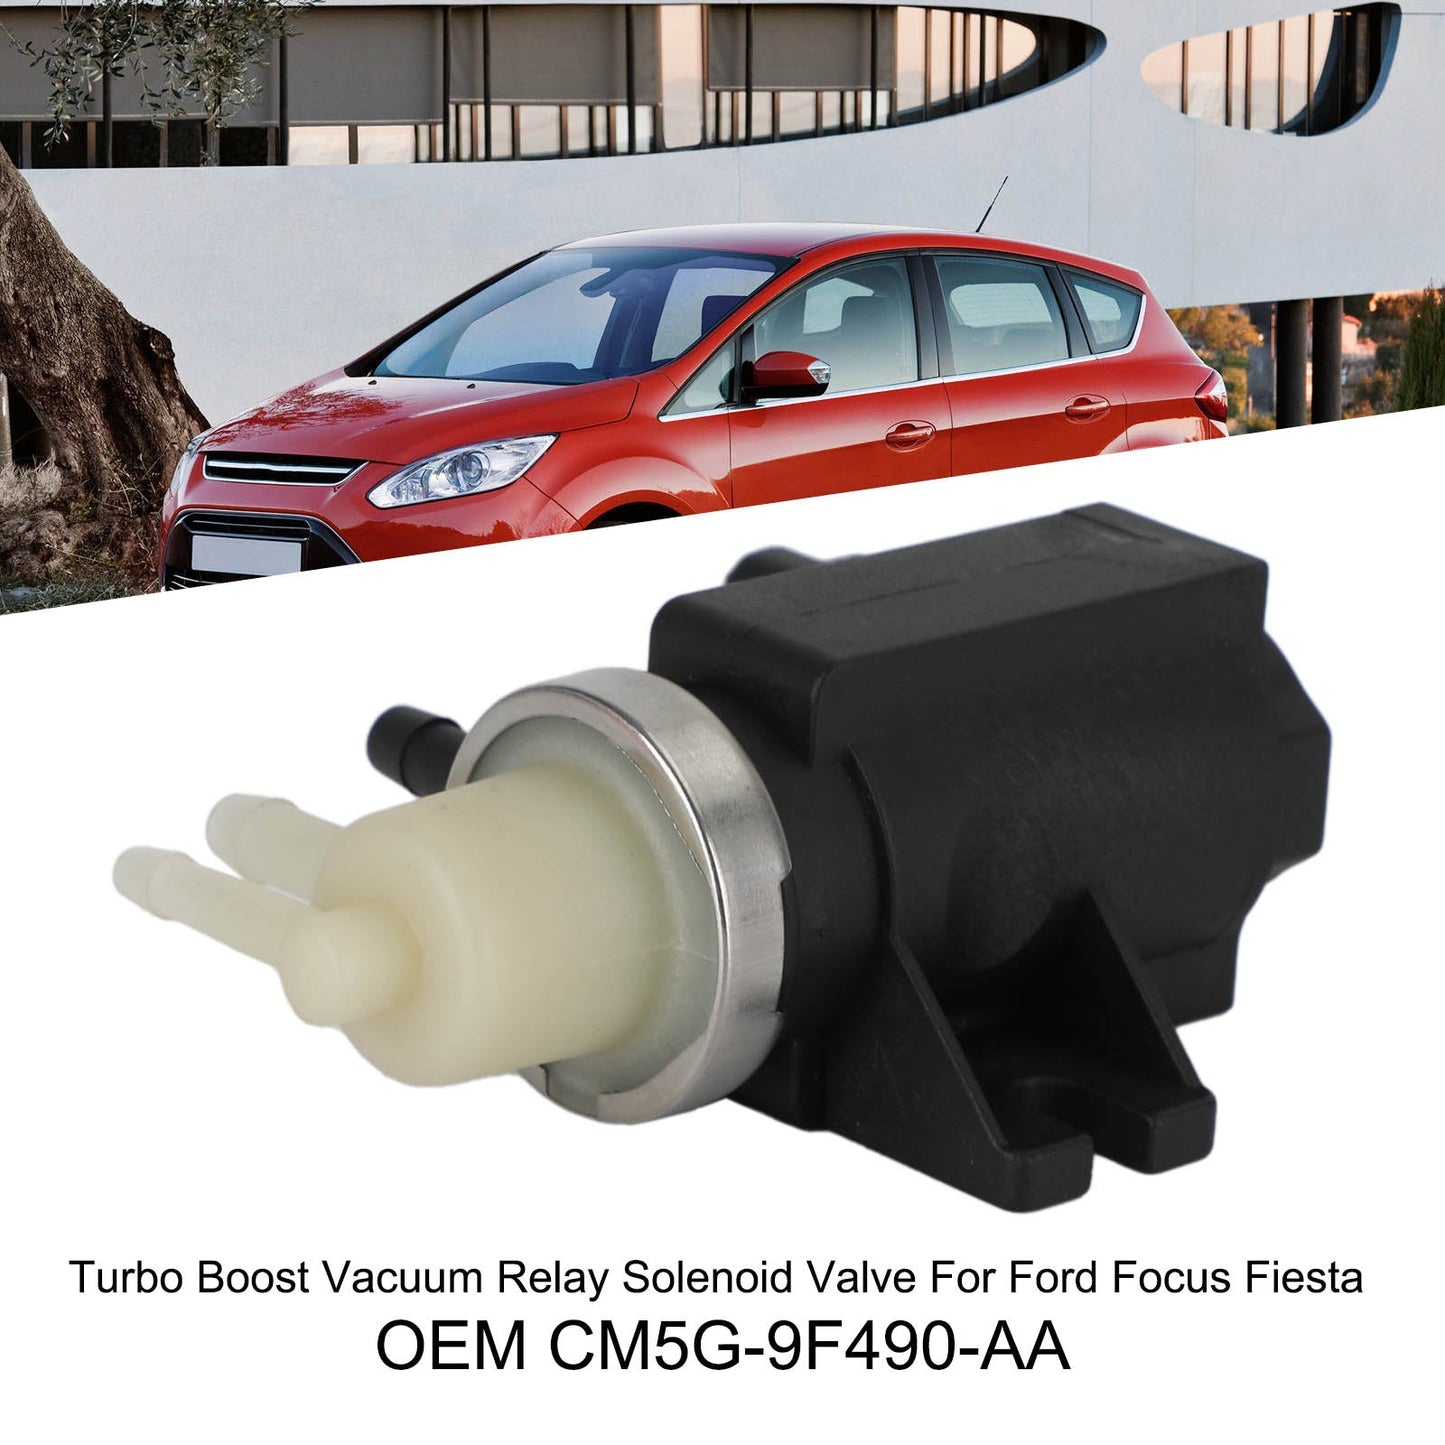 Électrovanne de relais de vide Turbo Boost pour Ford Focus Fiesta CM5G-9F490-AA générique